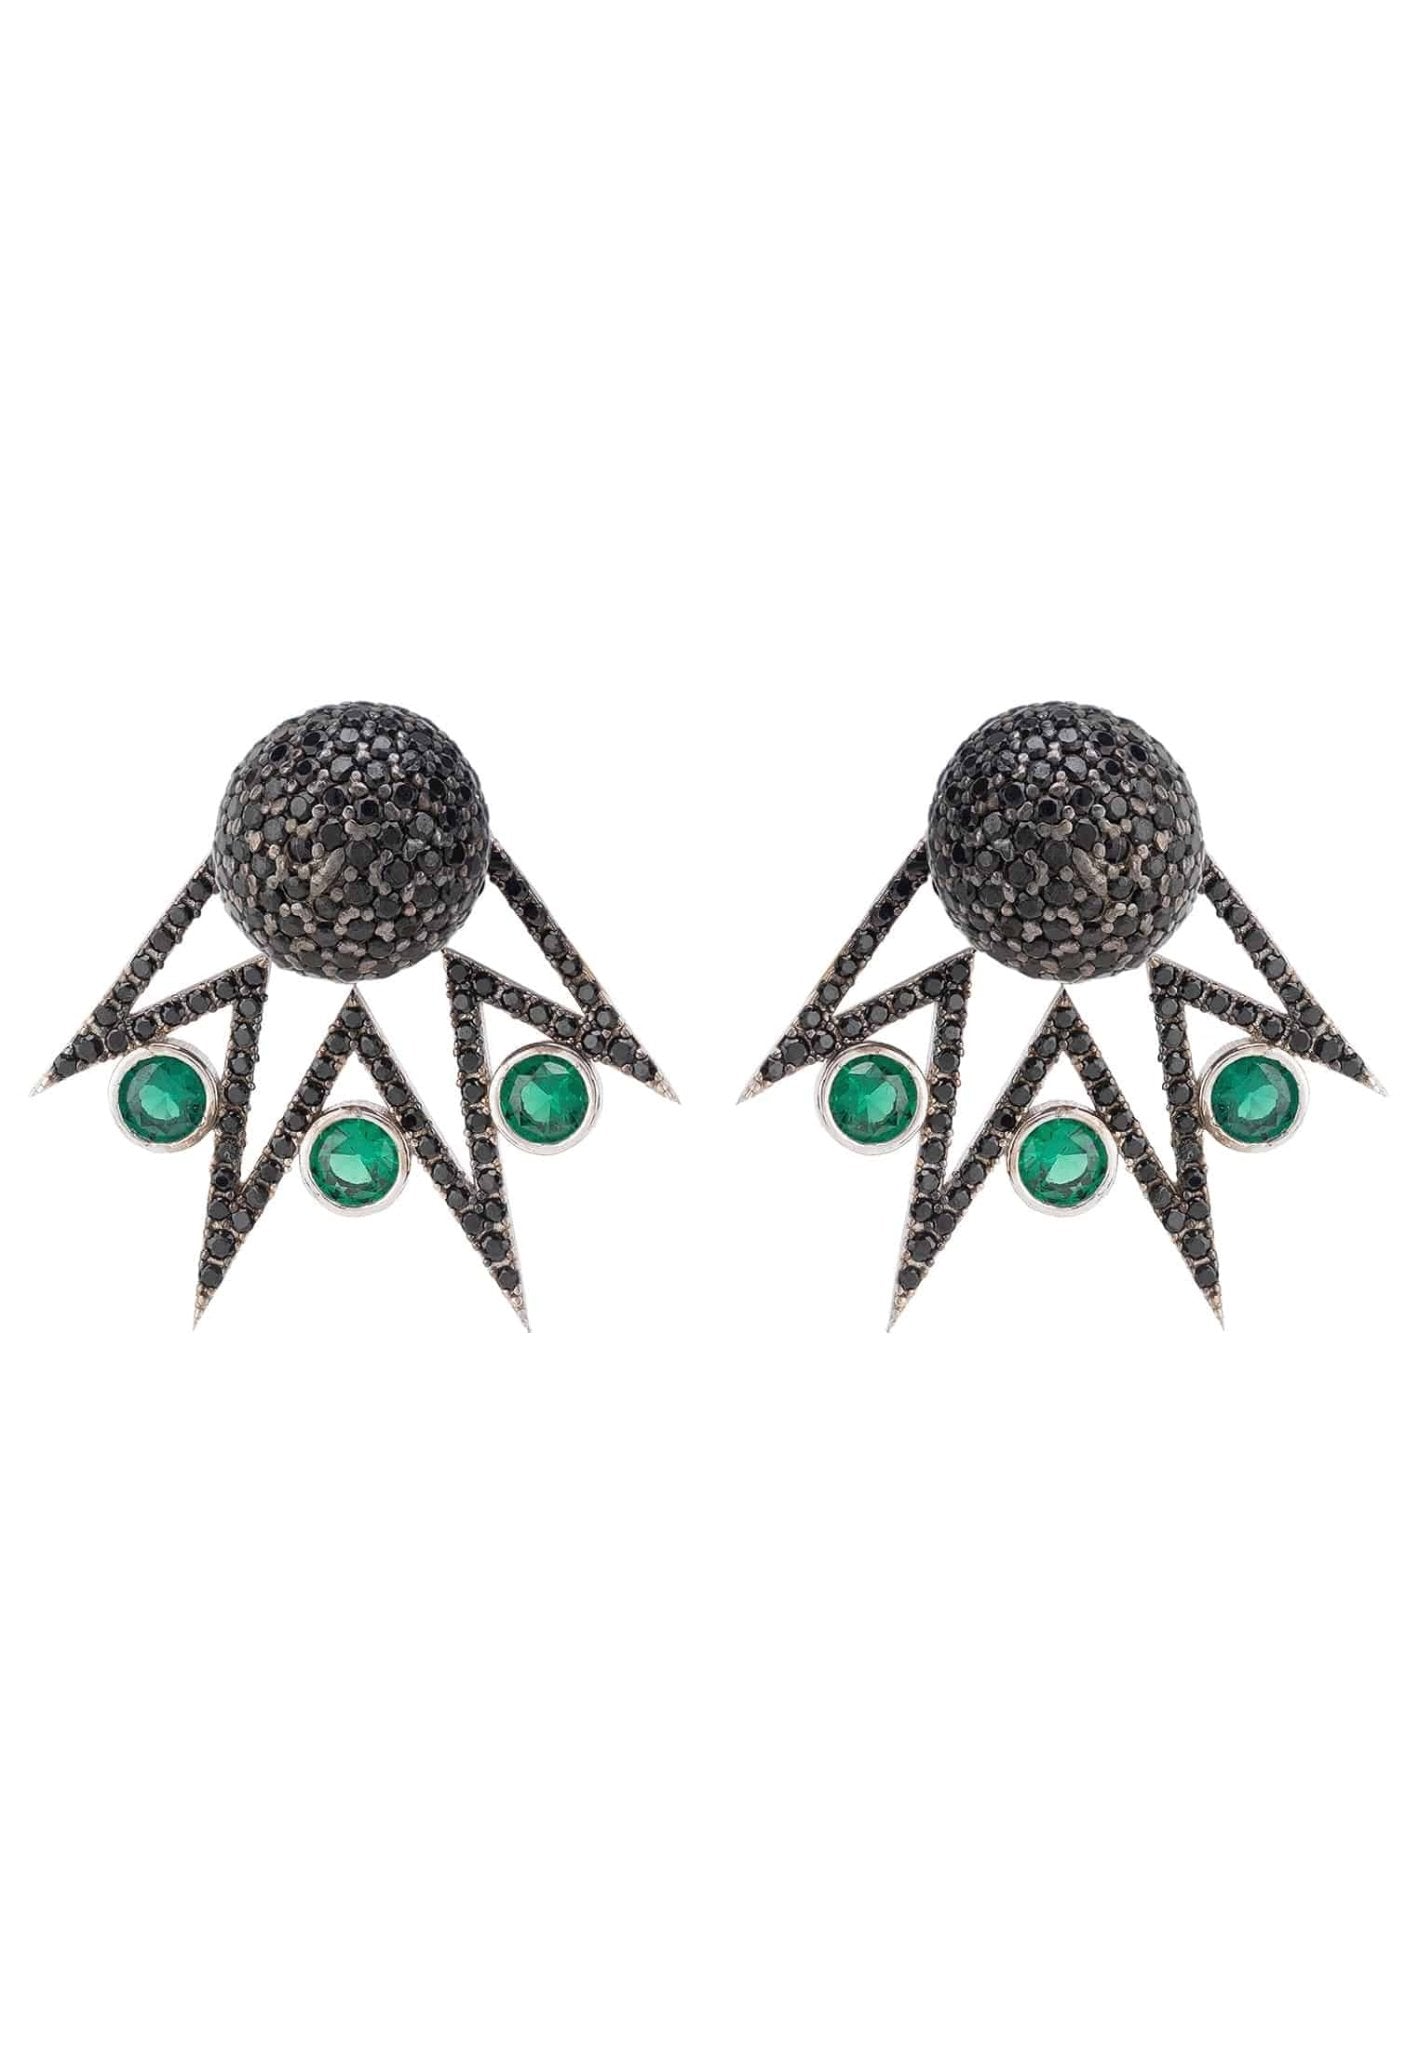 Jester Ear Jacket Convertible Earrings Green Black Silver - LATELITA Earrings